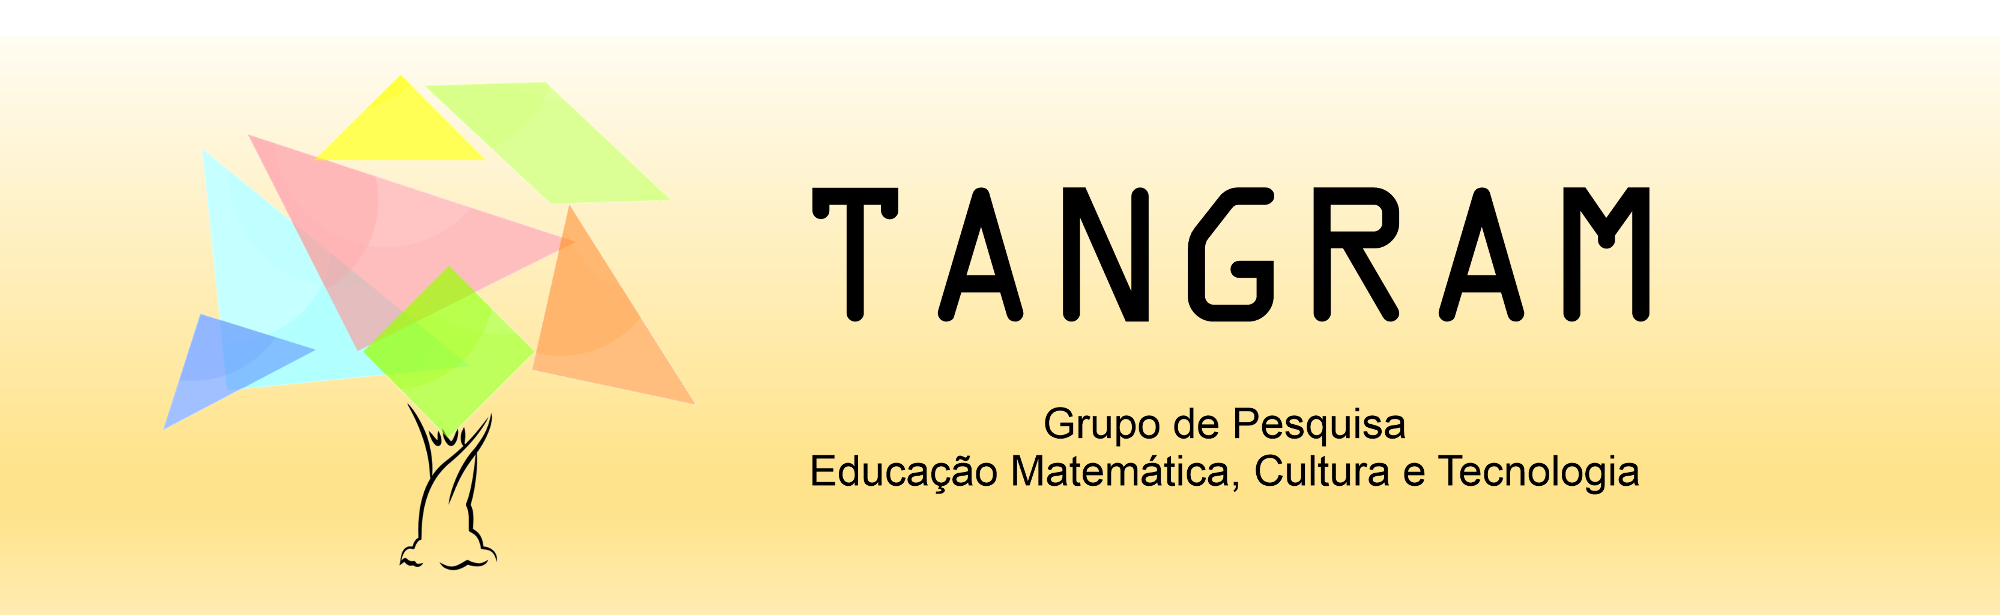 Grupo de Pesquisa Tangram - Educação Matematica, Cultura e Tecnologia